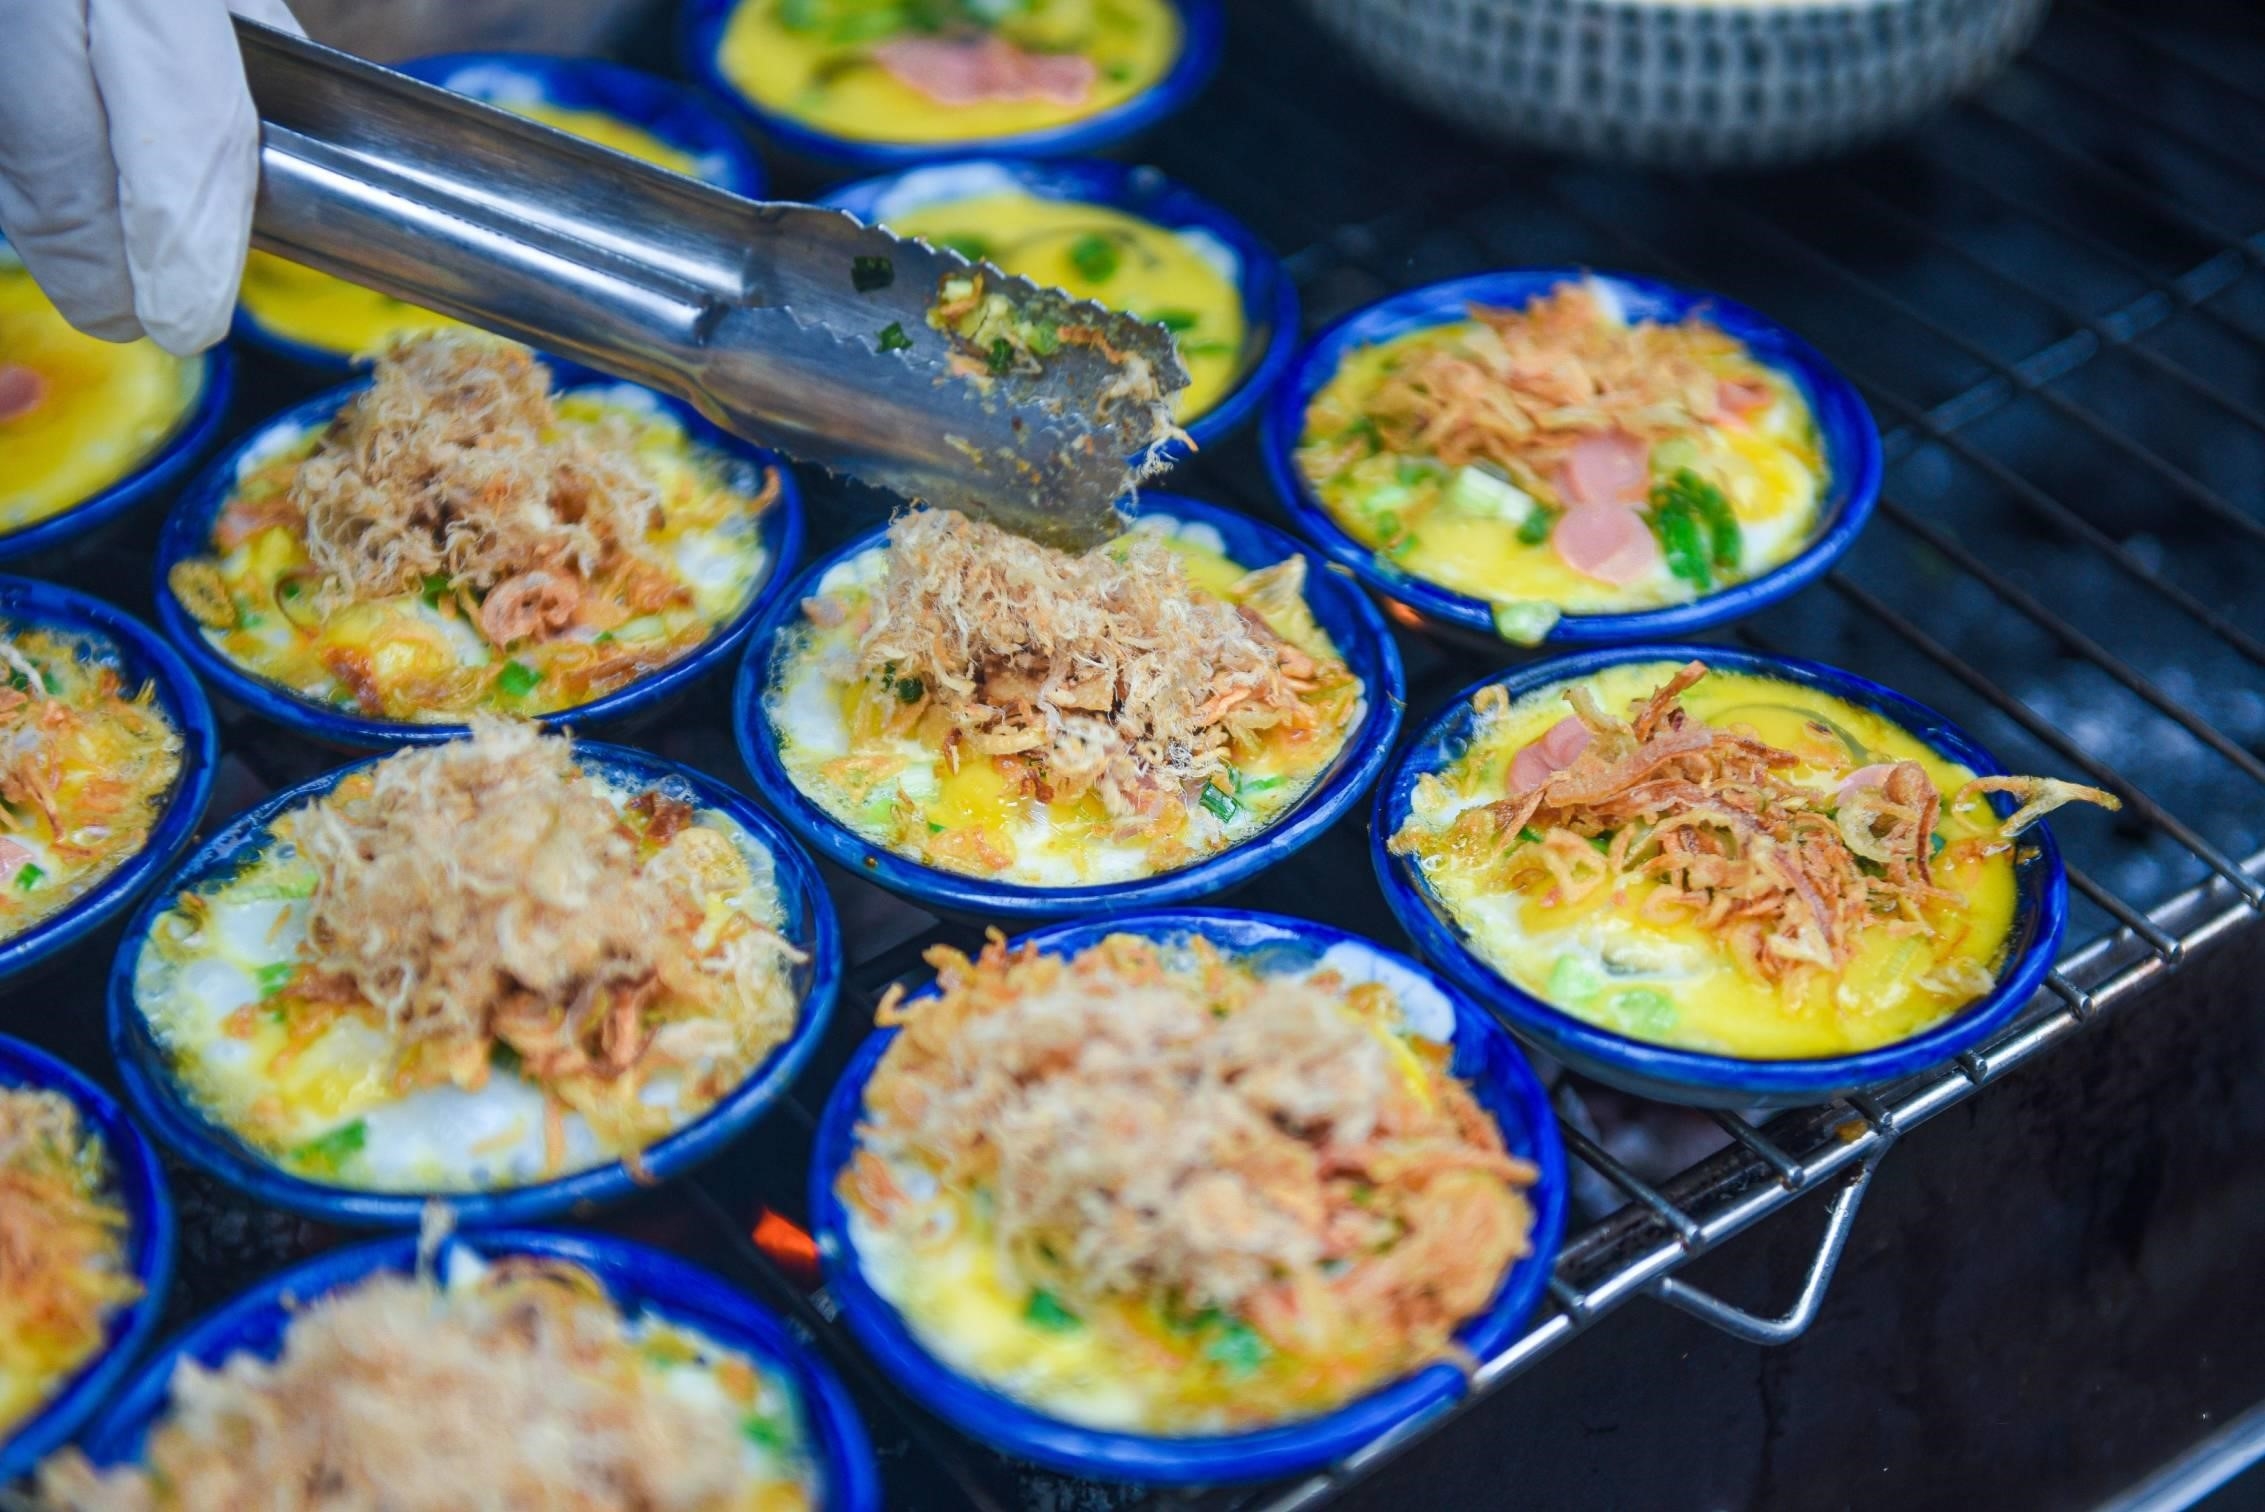 Trứng chén nướng cô Ty 24B Nguyễn Quang Bích là một món ăn đặc sản nổi tiếng tại địa chỉ này. Món ăn được chế biến từ trứng gà và nướng trên chén đất sẽ mang lại hương vị đặc trưng và thơm ngon.